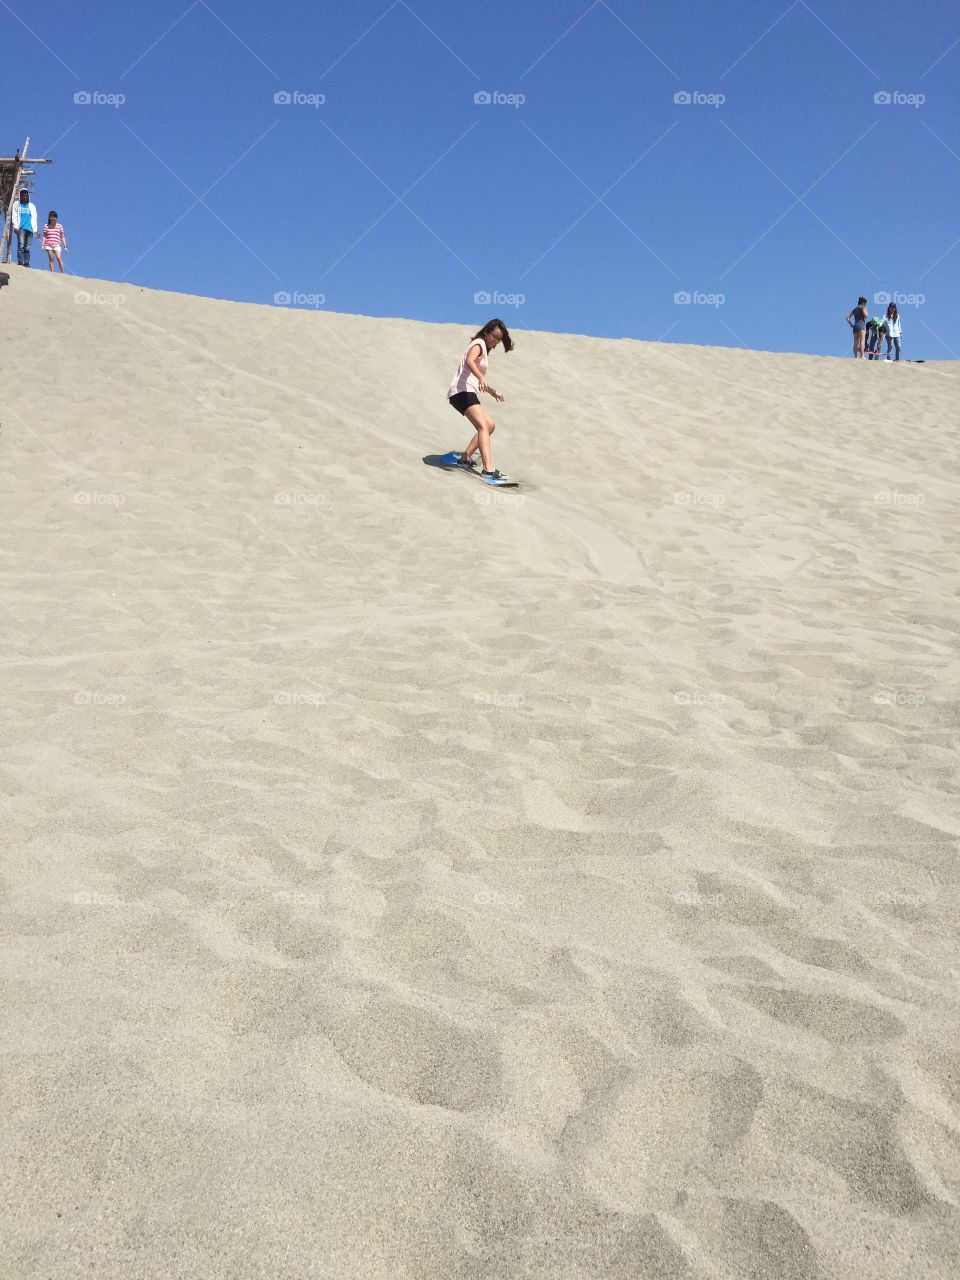 Sand board